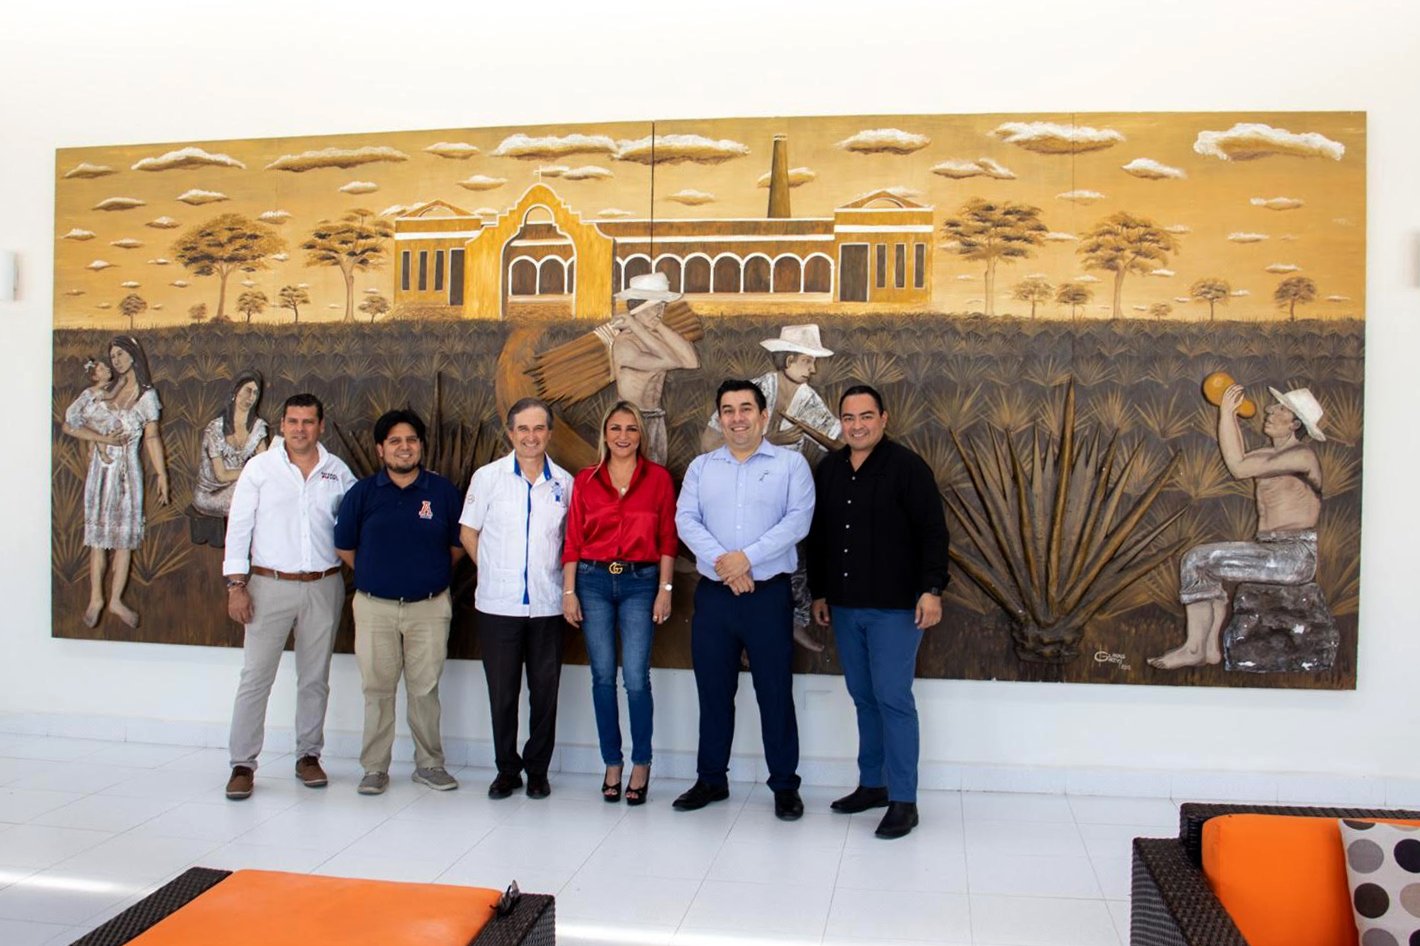 miembros de la universidad anahuac mayab y national soft se encuentran delante de un mural en le cordon bleu